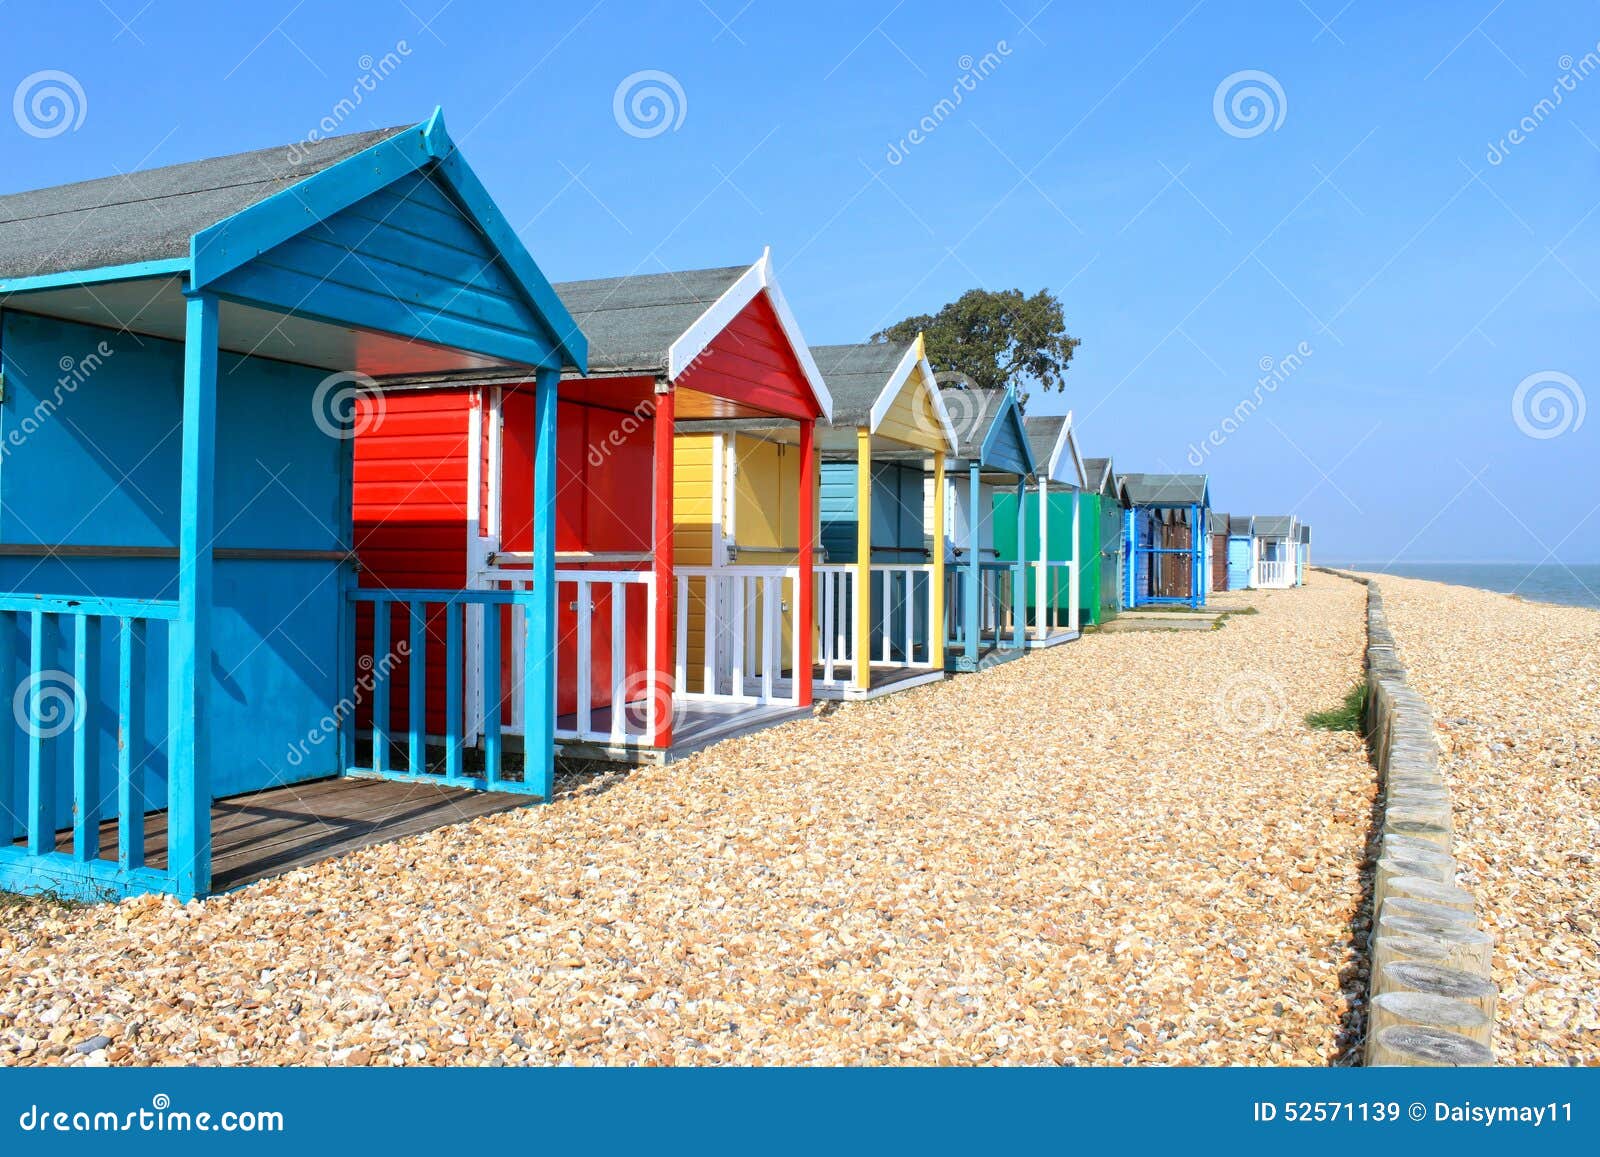 british beach huts